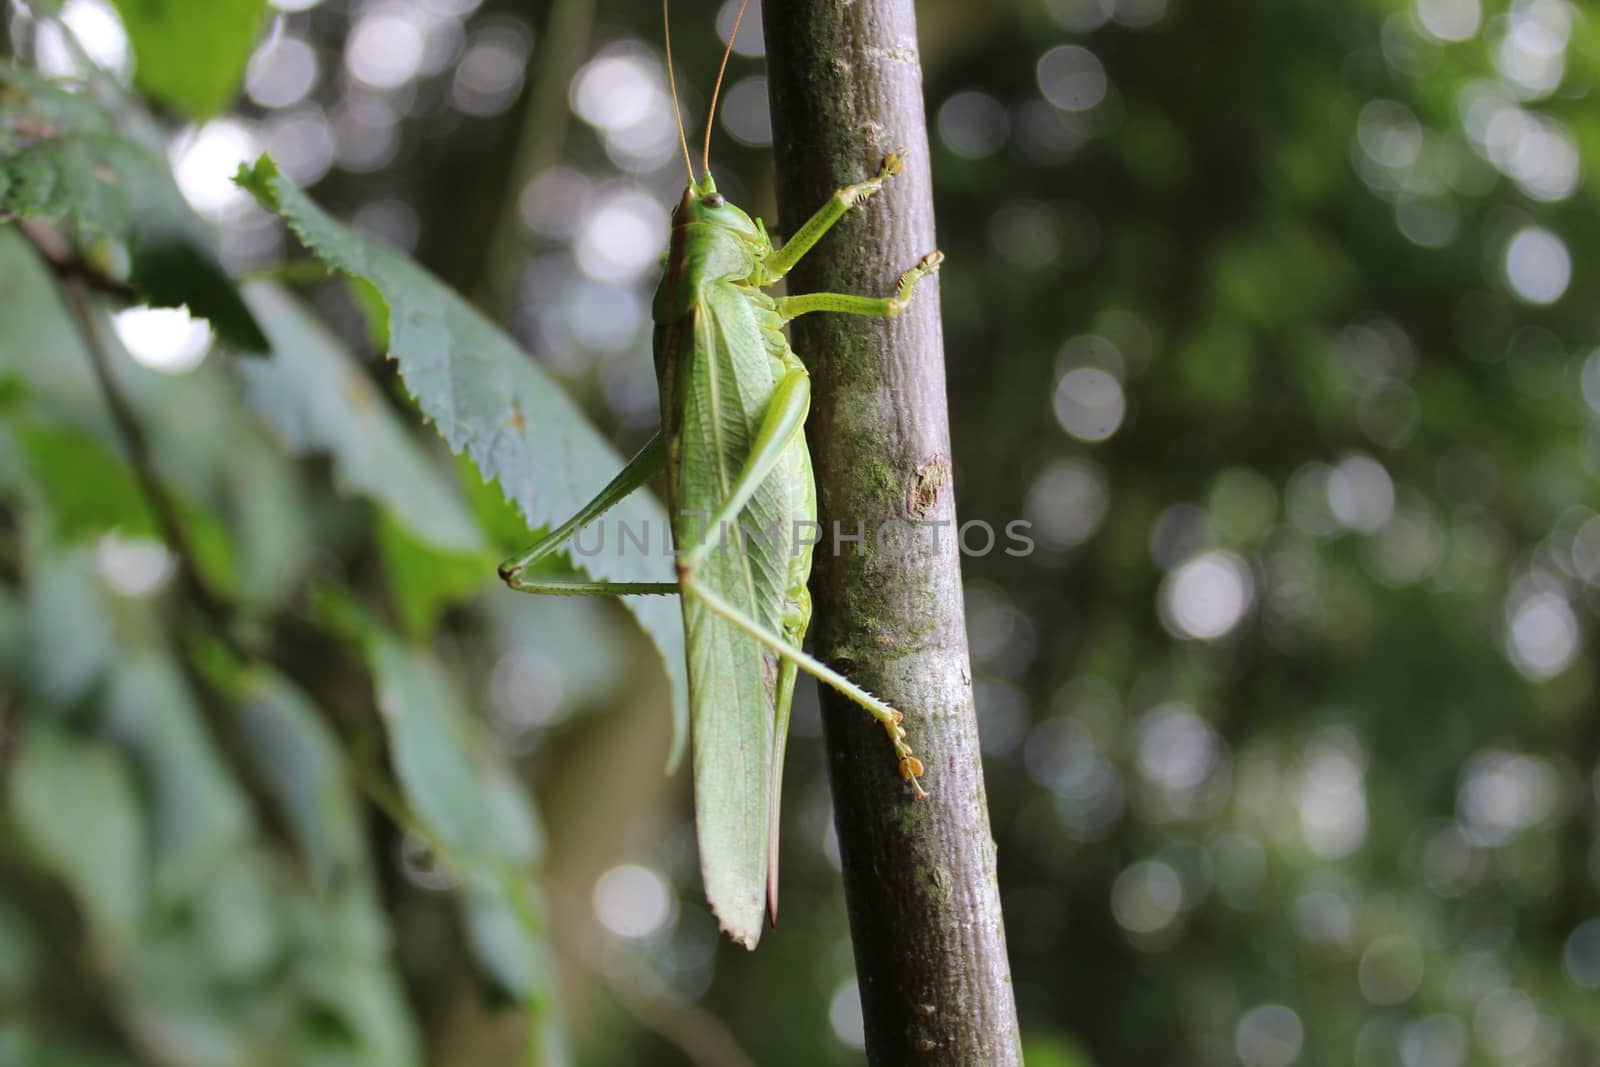 grasshopper in the nature by martina_unbehauen